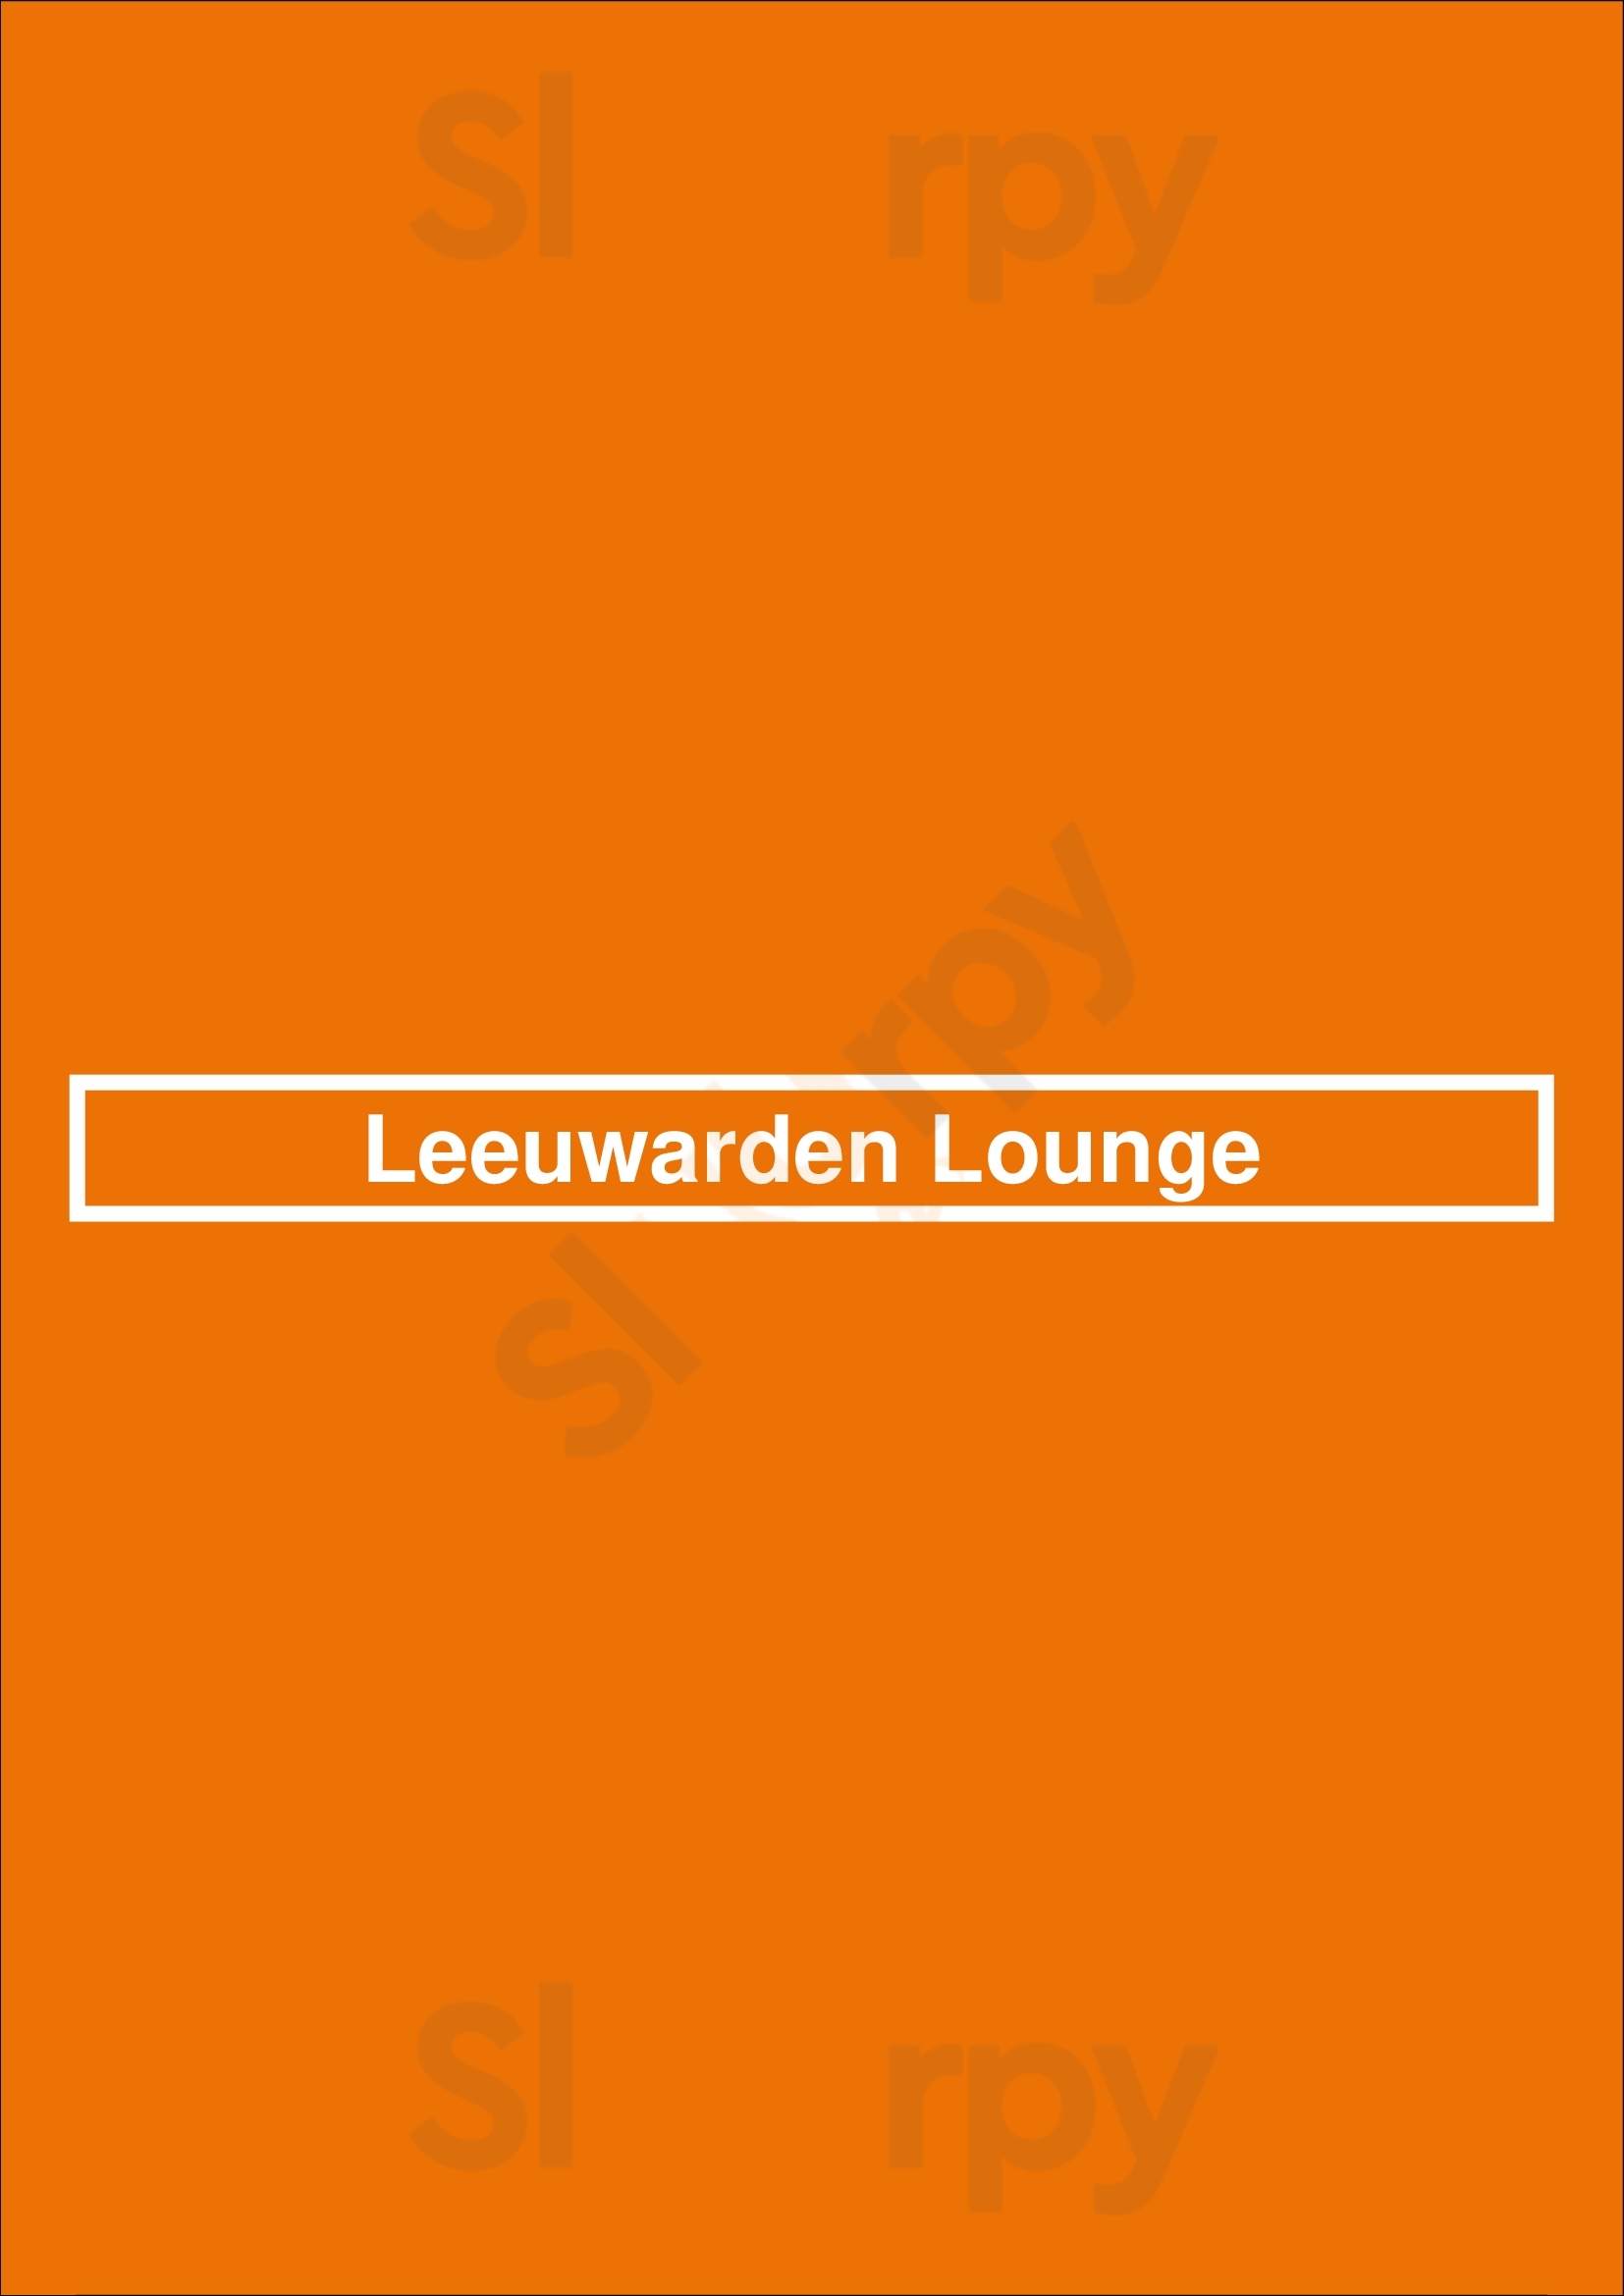 Leeuwarden Lounge Leeuwarden Menu - 1